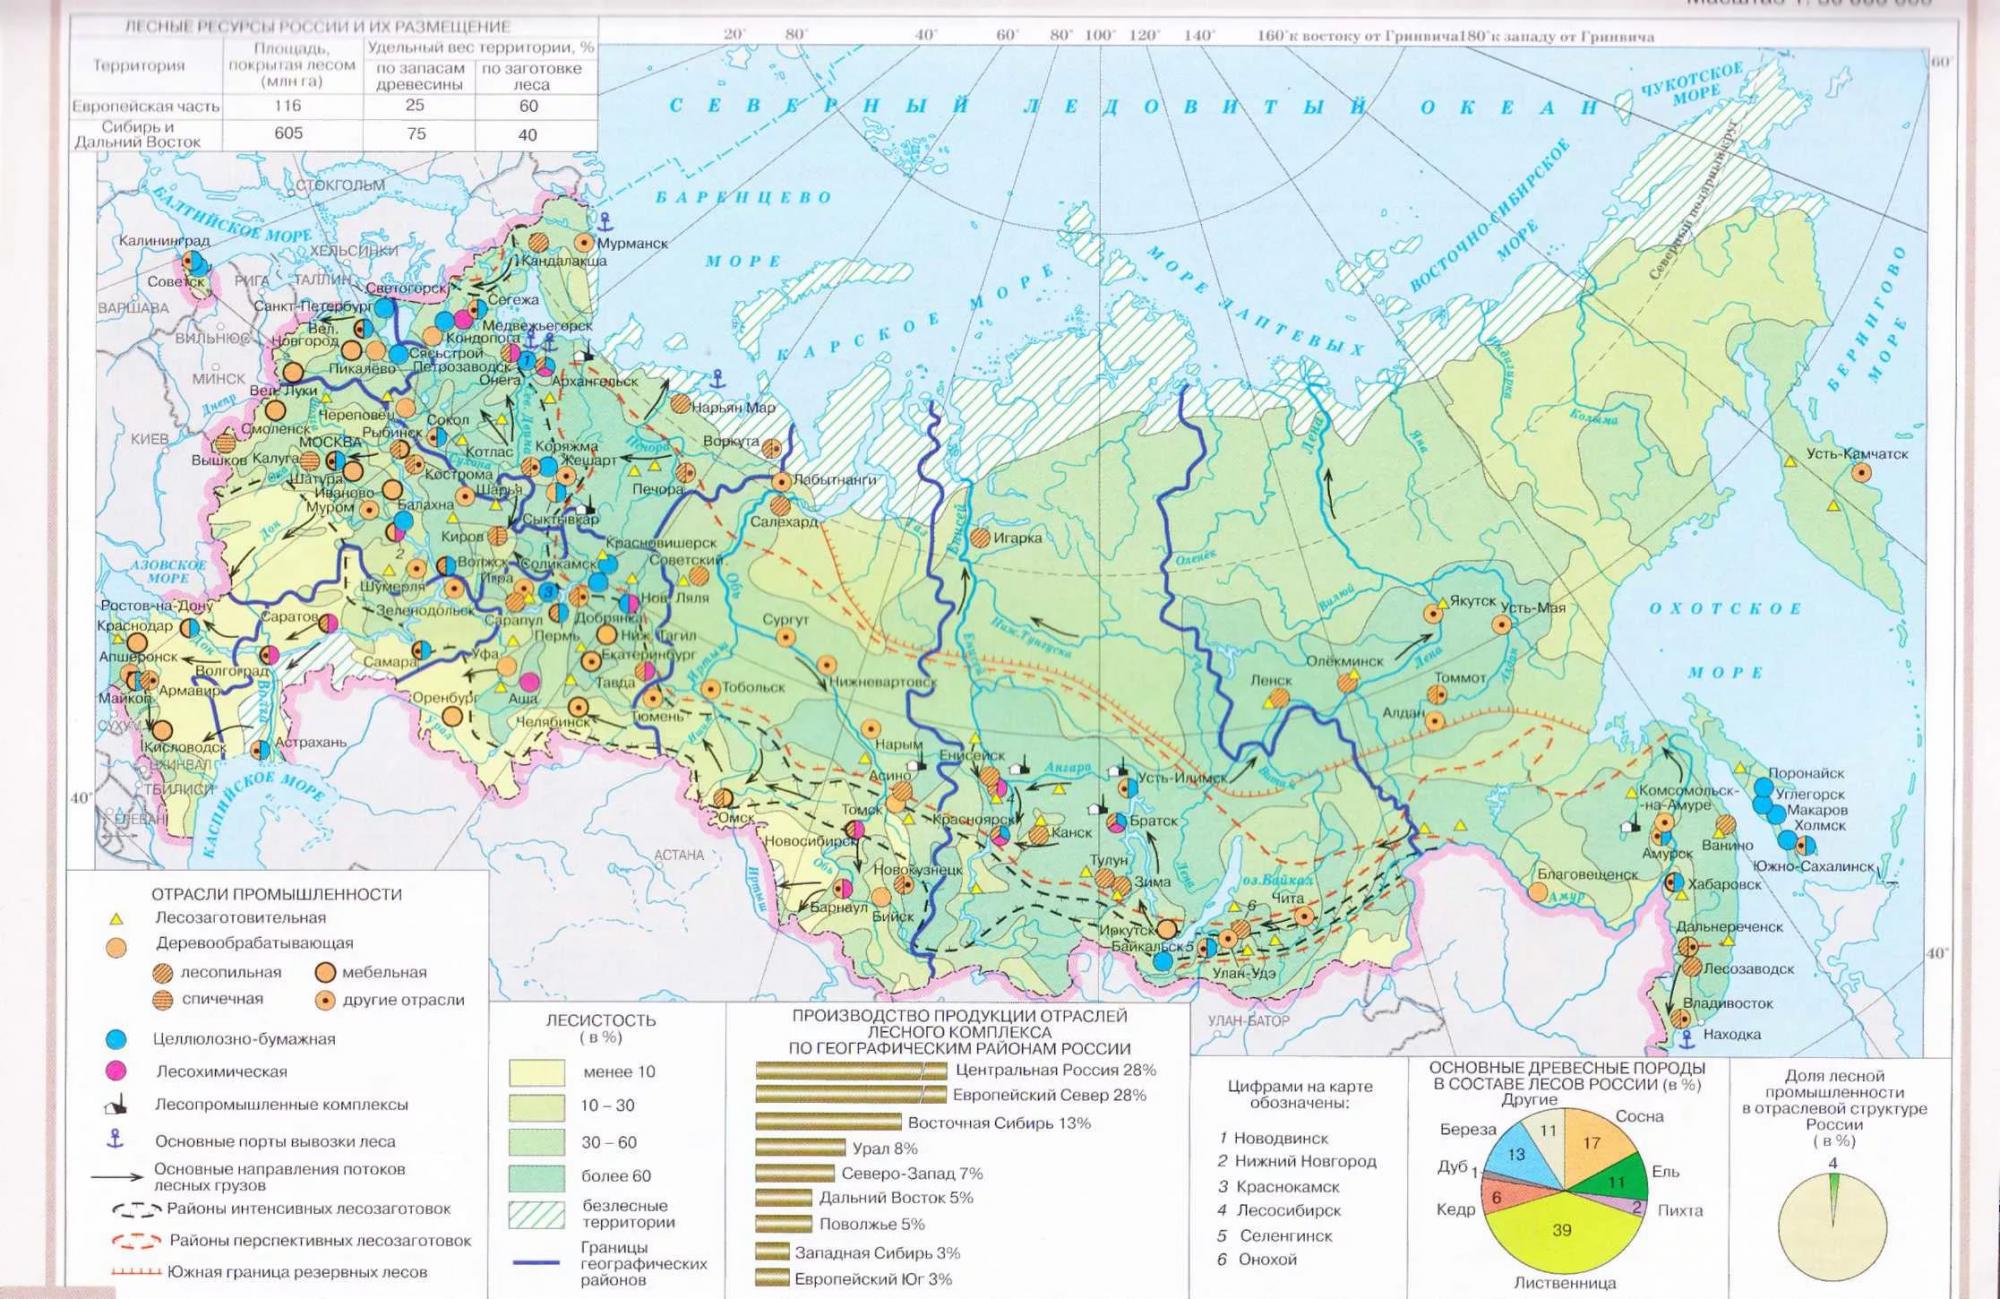 Нет России без леса: ведущие предприятия лесной промышленности и их собственники в 2014-2016 г.г. (bazil)